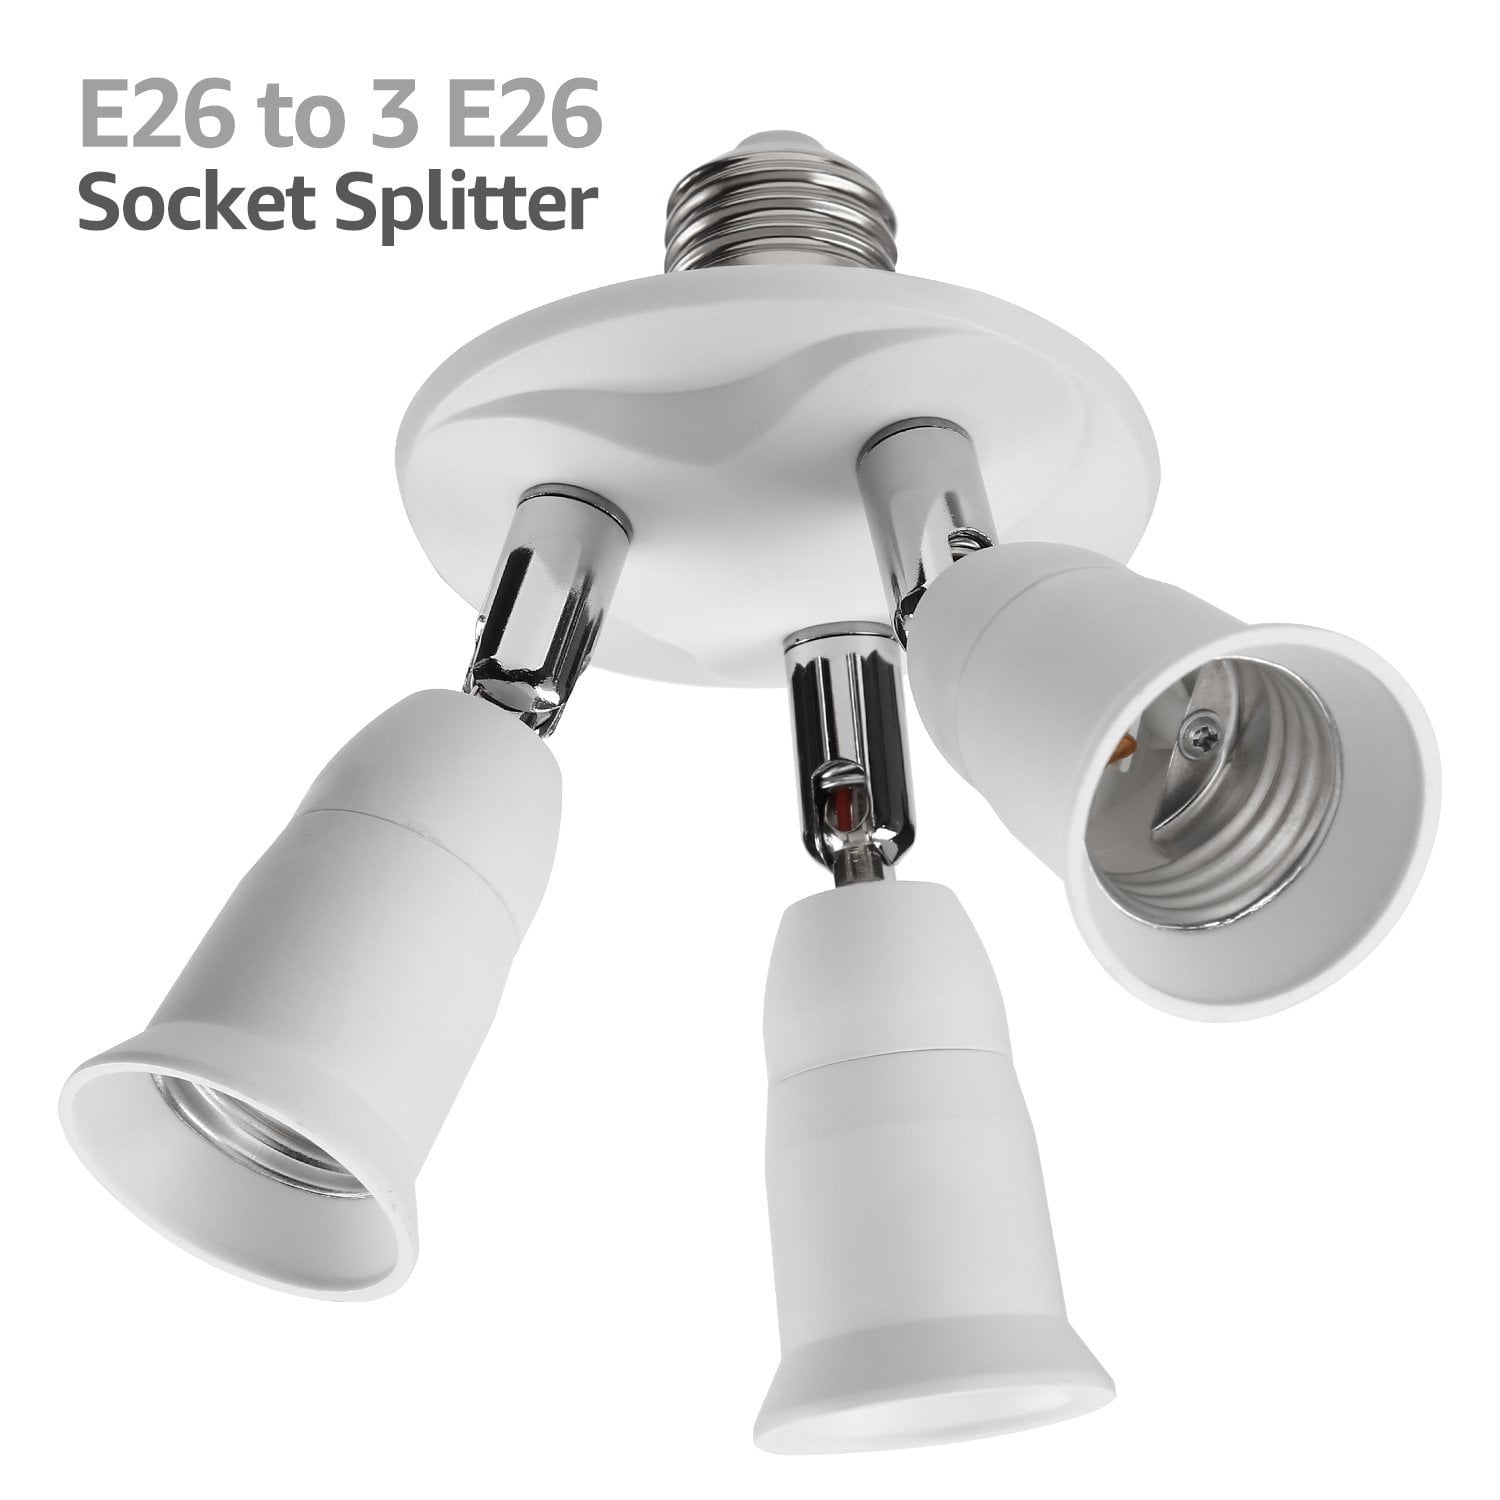 Light Socket Splitter,E26 E27 Lengthen 3+1 Multi Light Bulb Adapter,Adapter Socket Splitter for Led Bulbs,Heat-resistant&safety Design,Household Lighting Fixture Toplimit Free Swing E26 